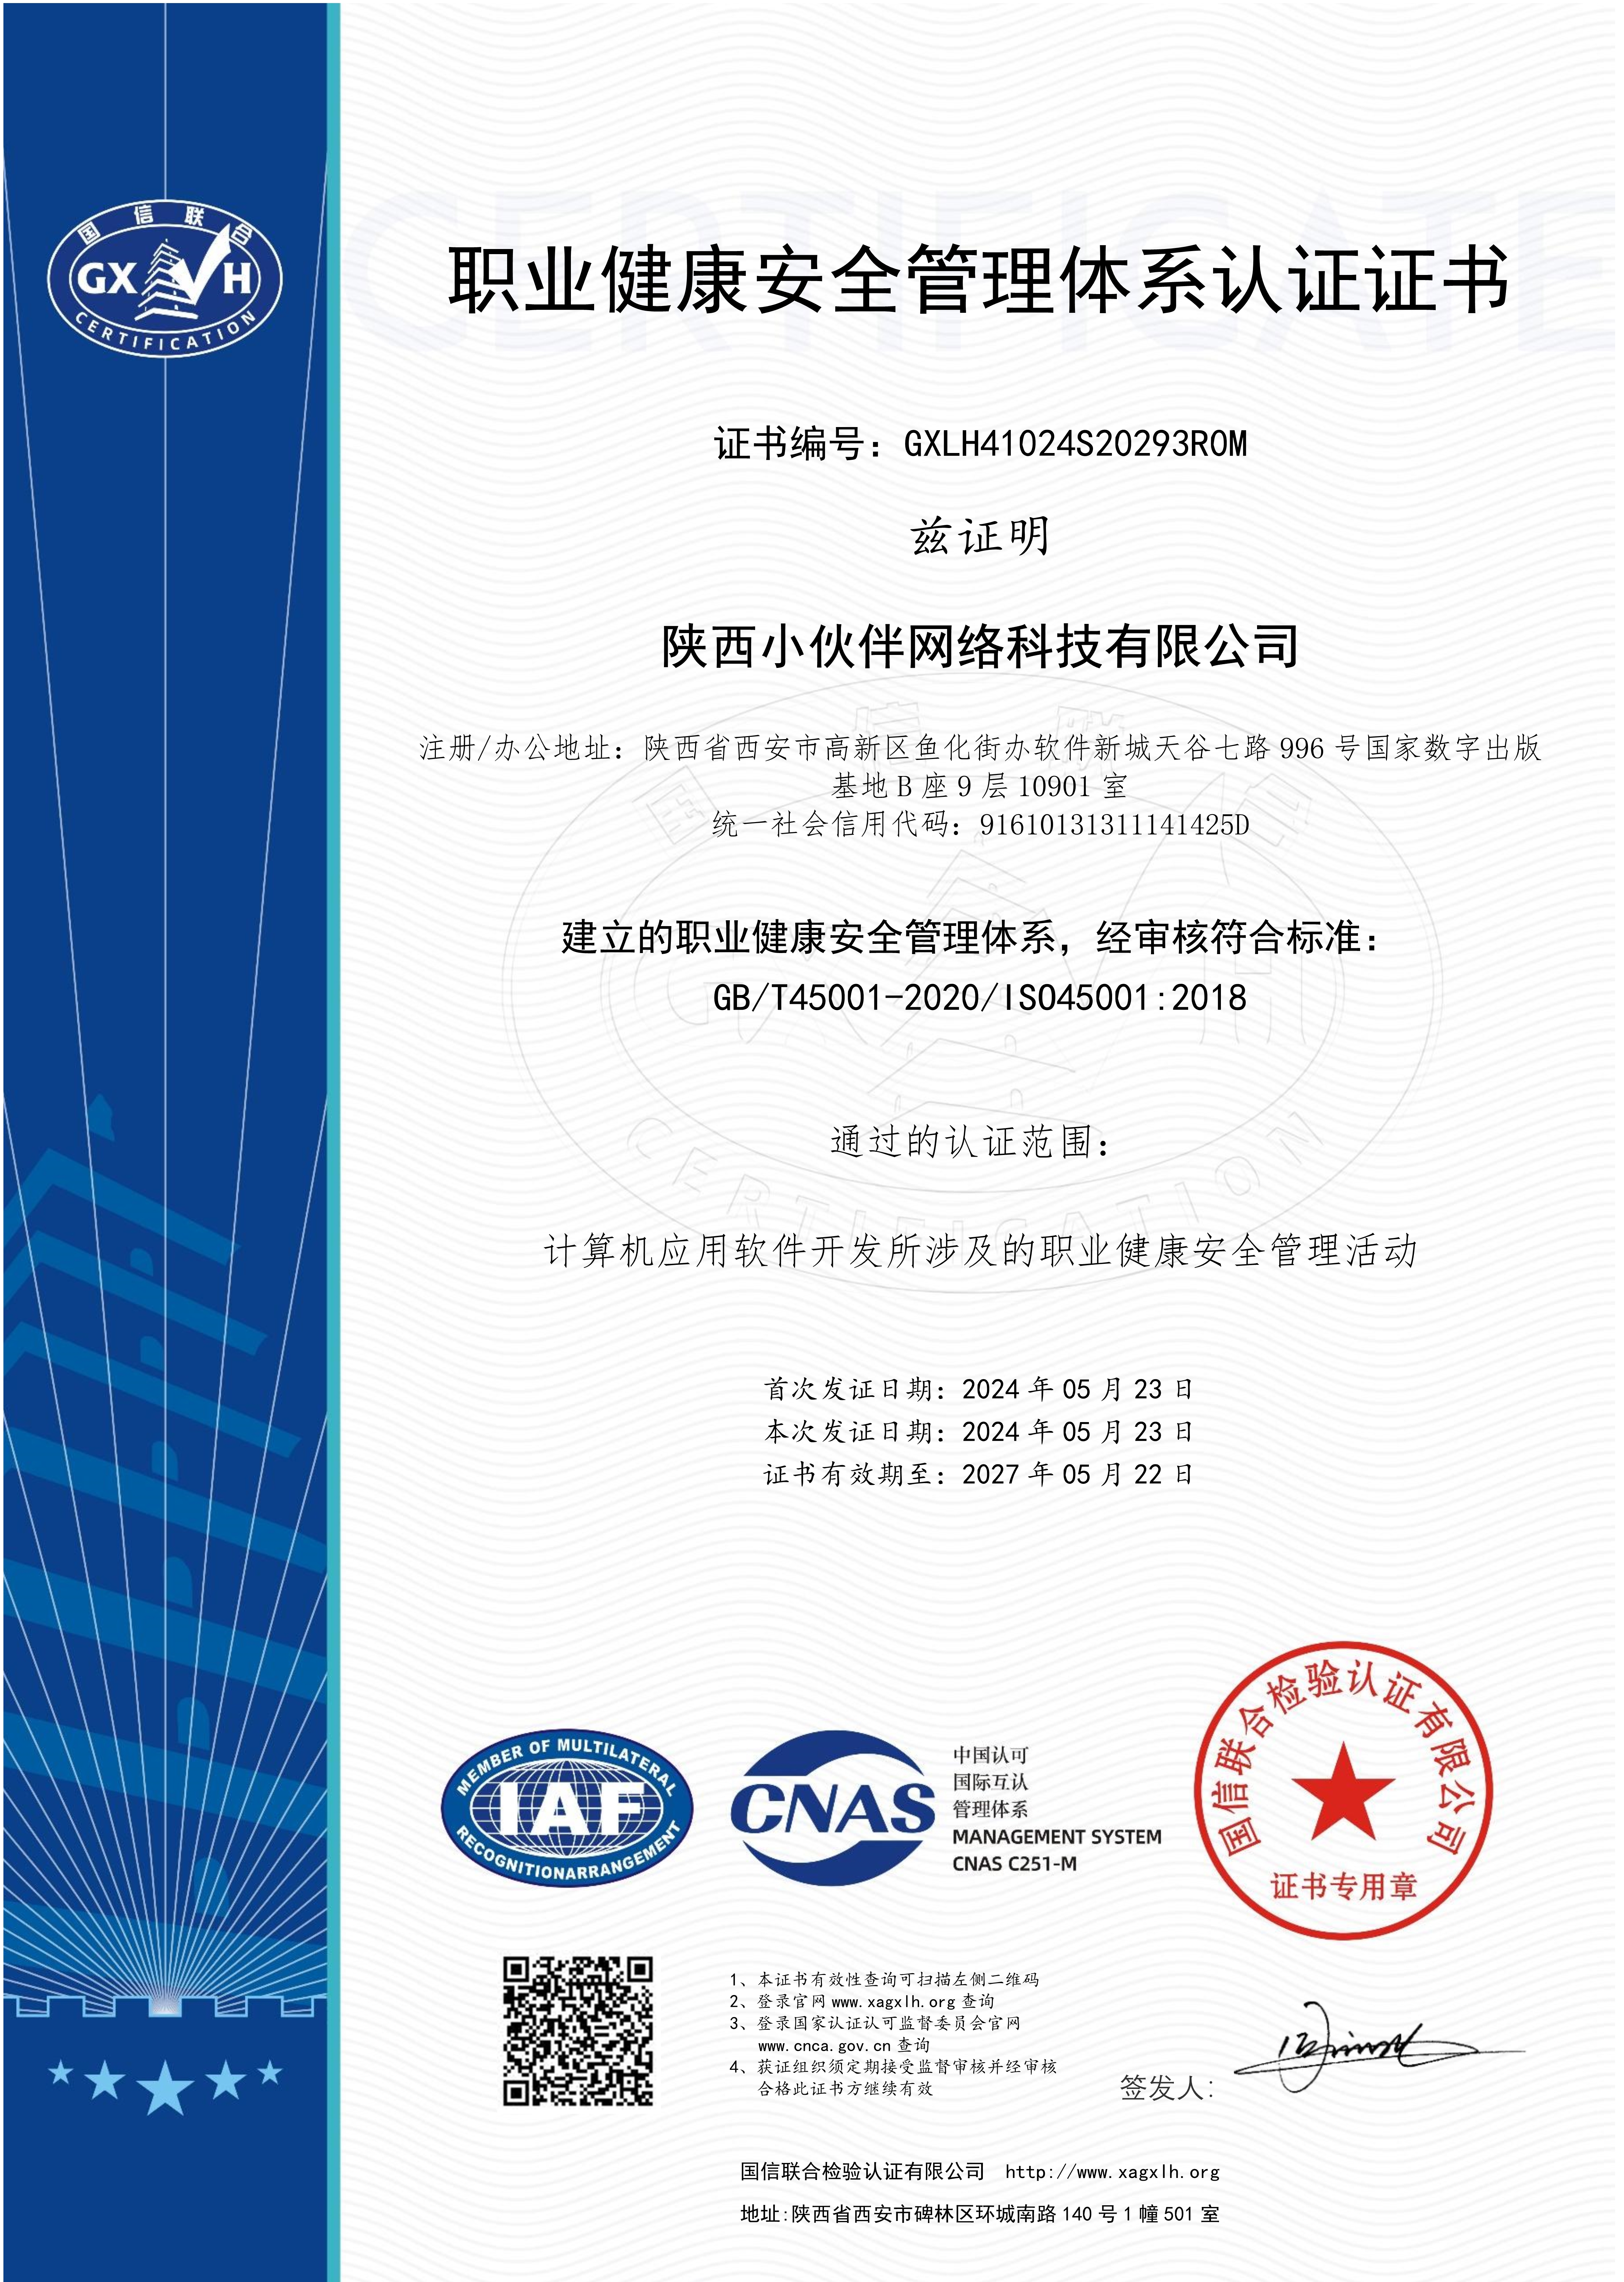 20.职业健康安全管理体系认证ISO45001.jpg